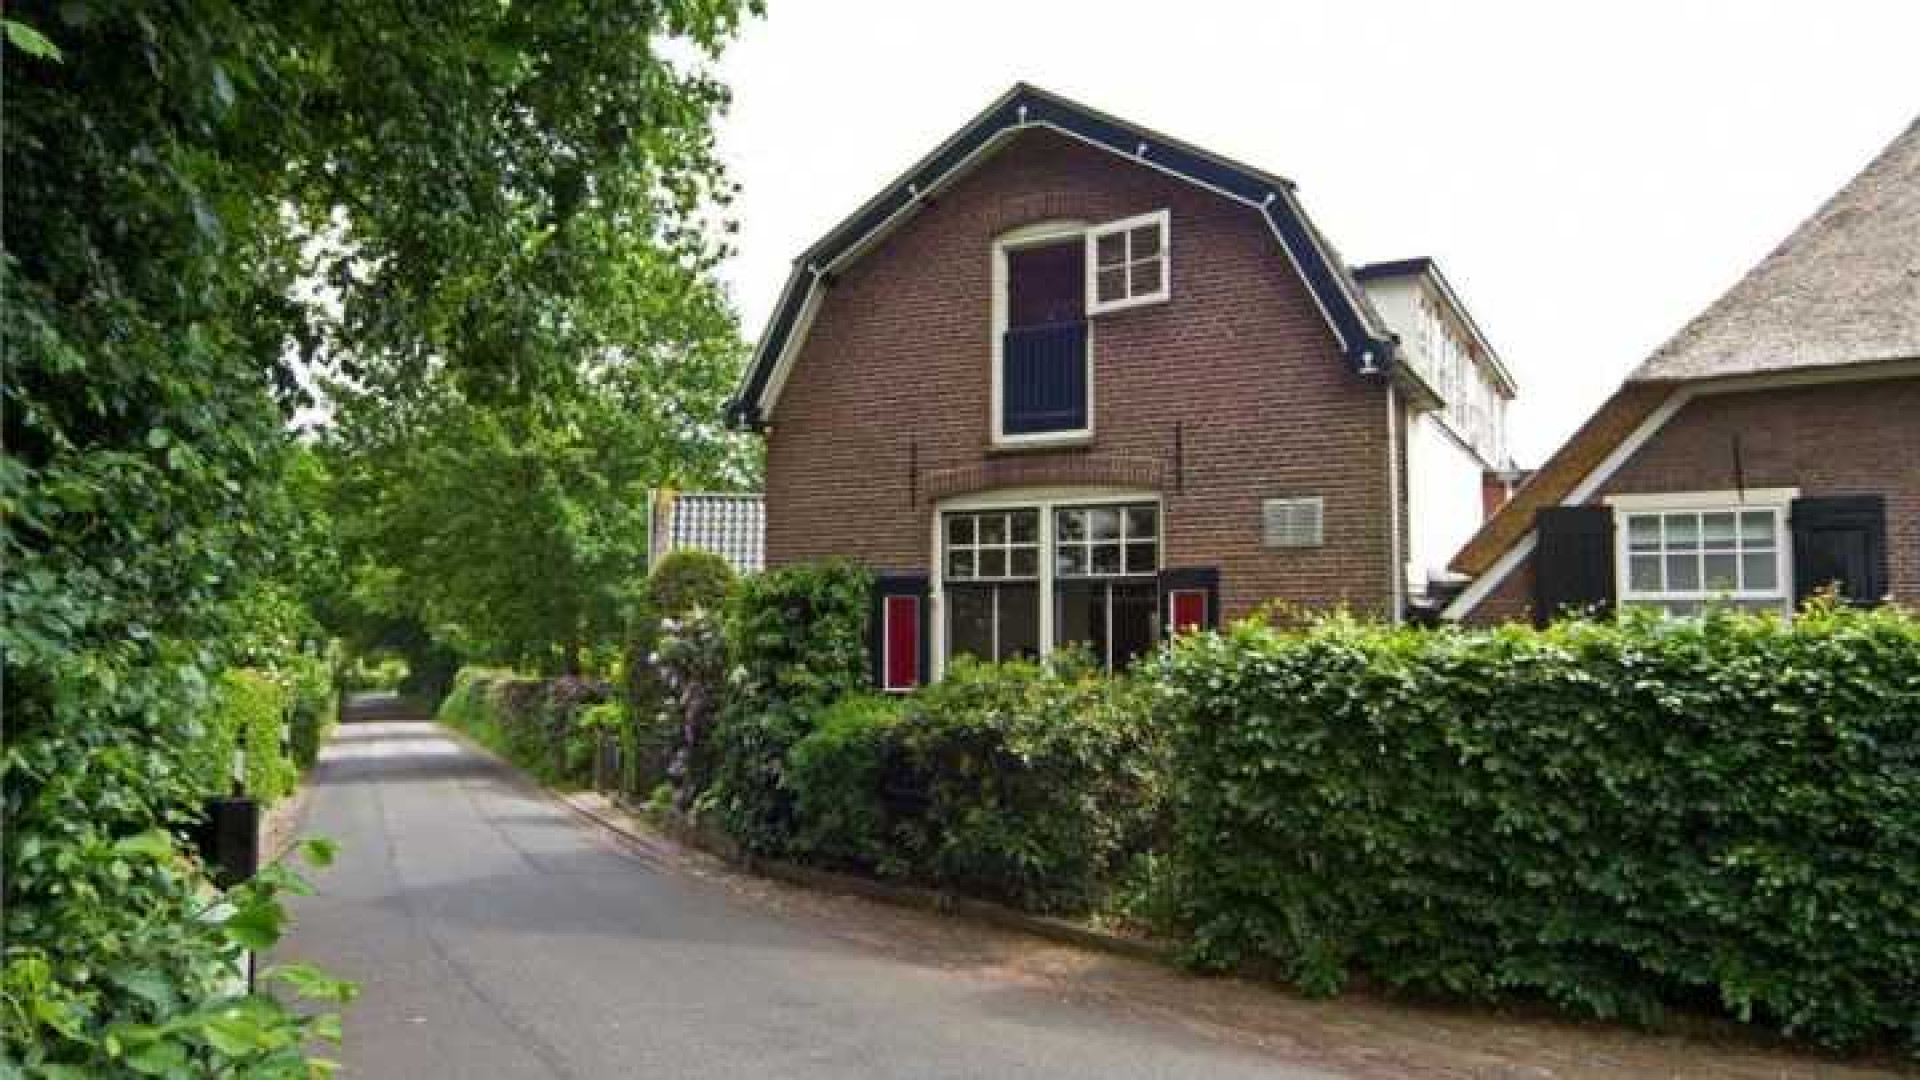 Herman van Veen haalt na eerdere prijsverlaging zijn huis uit de verkoop. Zie foto's 1